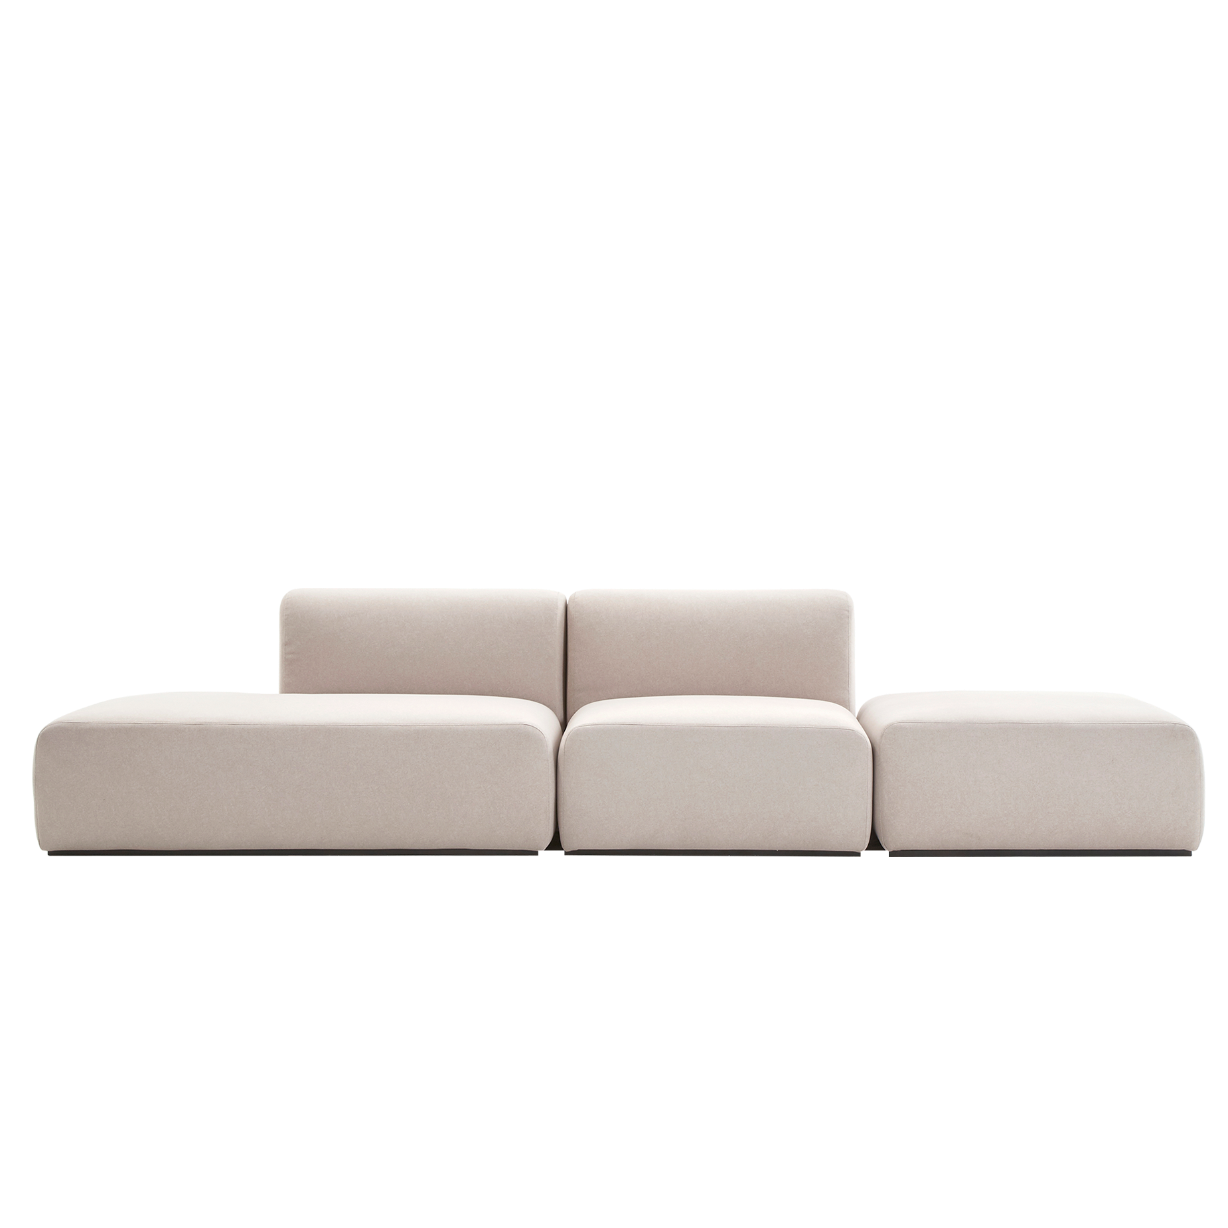 (주)도이치[3주 주문제작]    DOICH ® Aquaclean PEN3 modular couch sofa  도이치 Pen3  3인 카우치 소파 ( 카우치+1인 ) + 스툴 /(스페인 아쿠아클린)